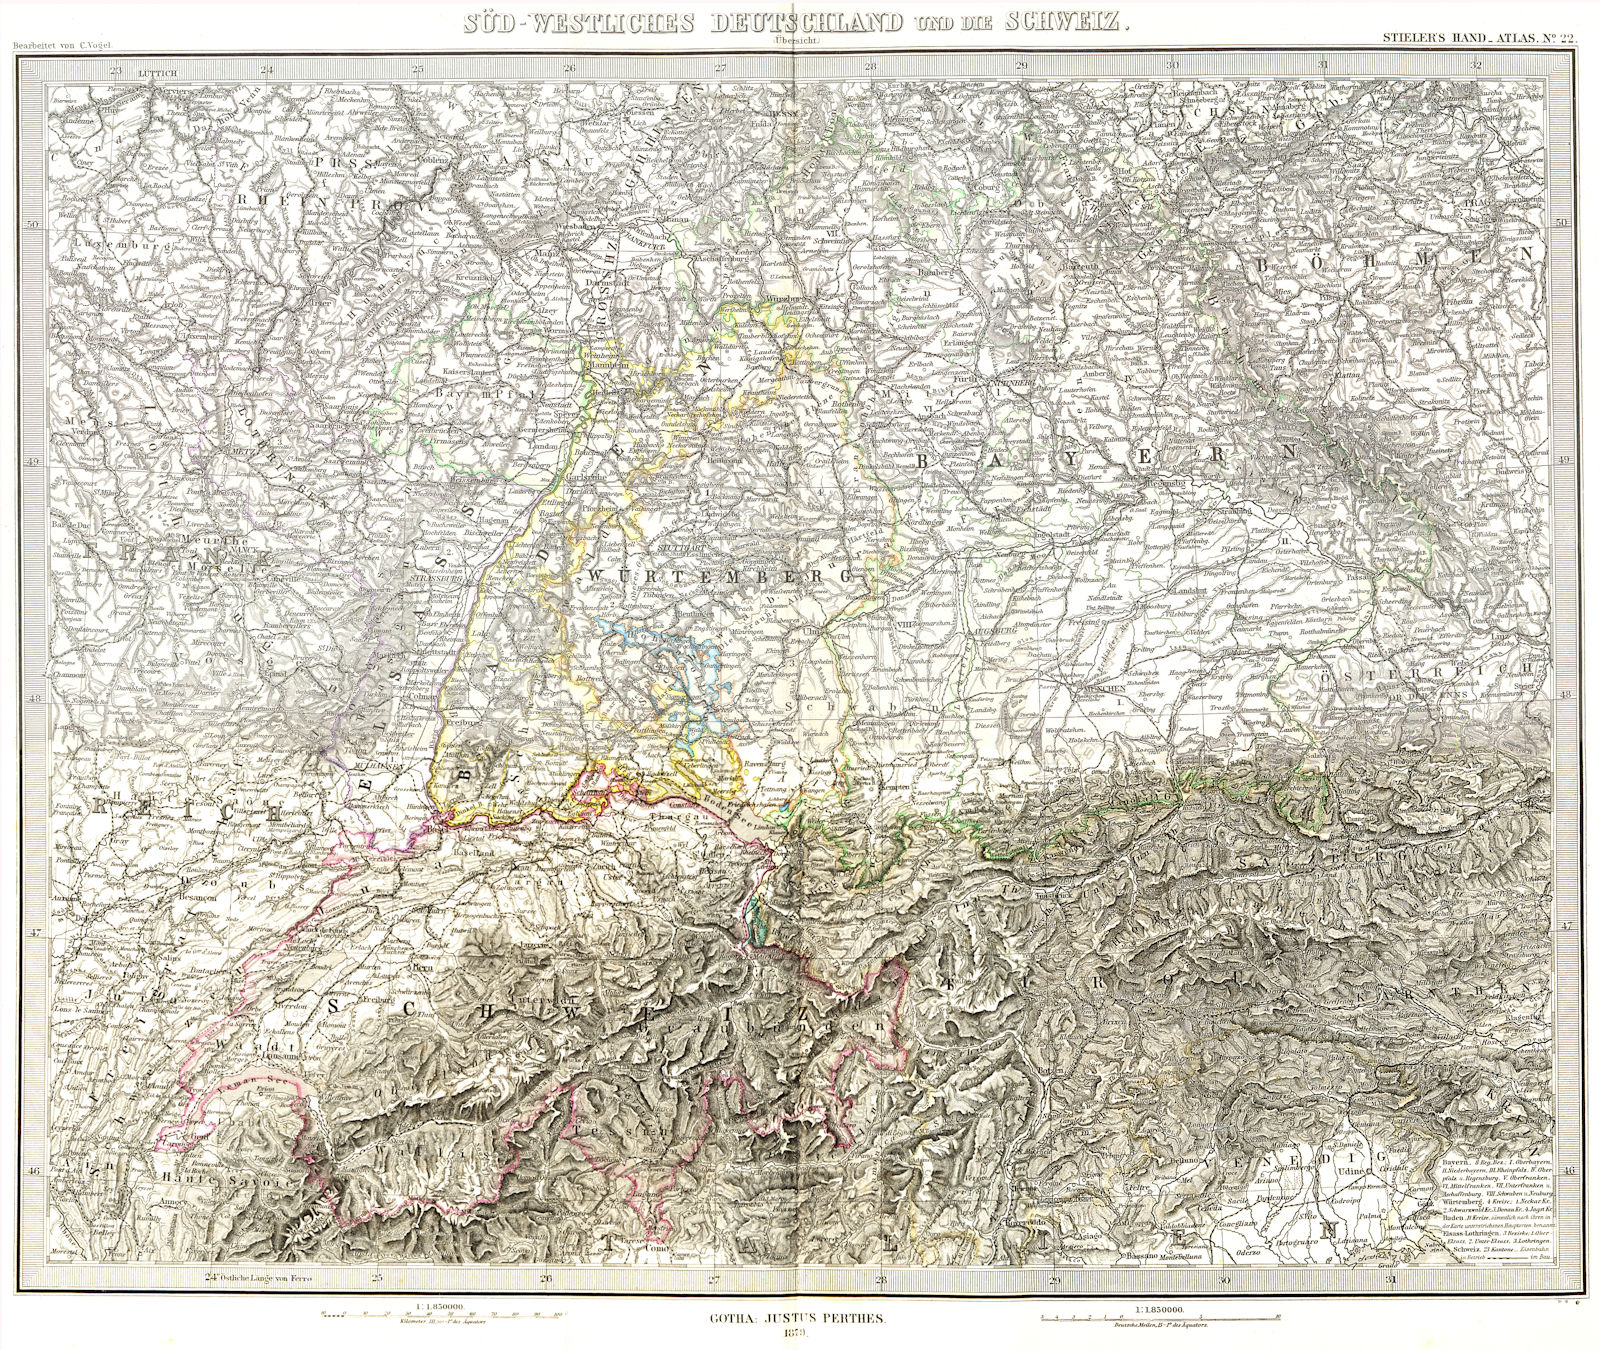 GERMANY. Sud-Westliches Deutschland Schweiz 1879 old antique map plan chart